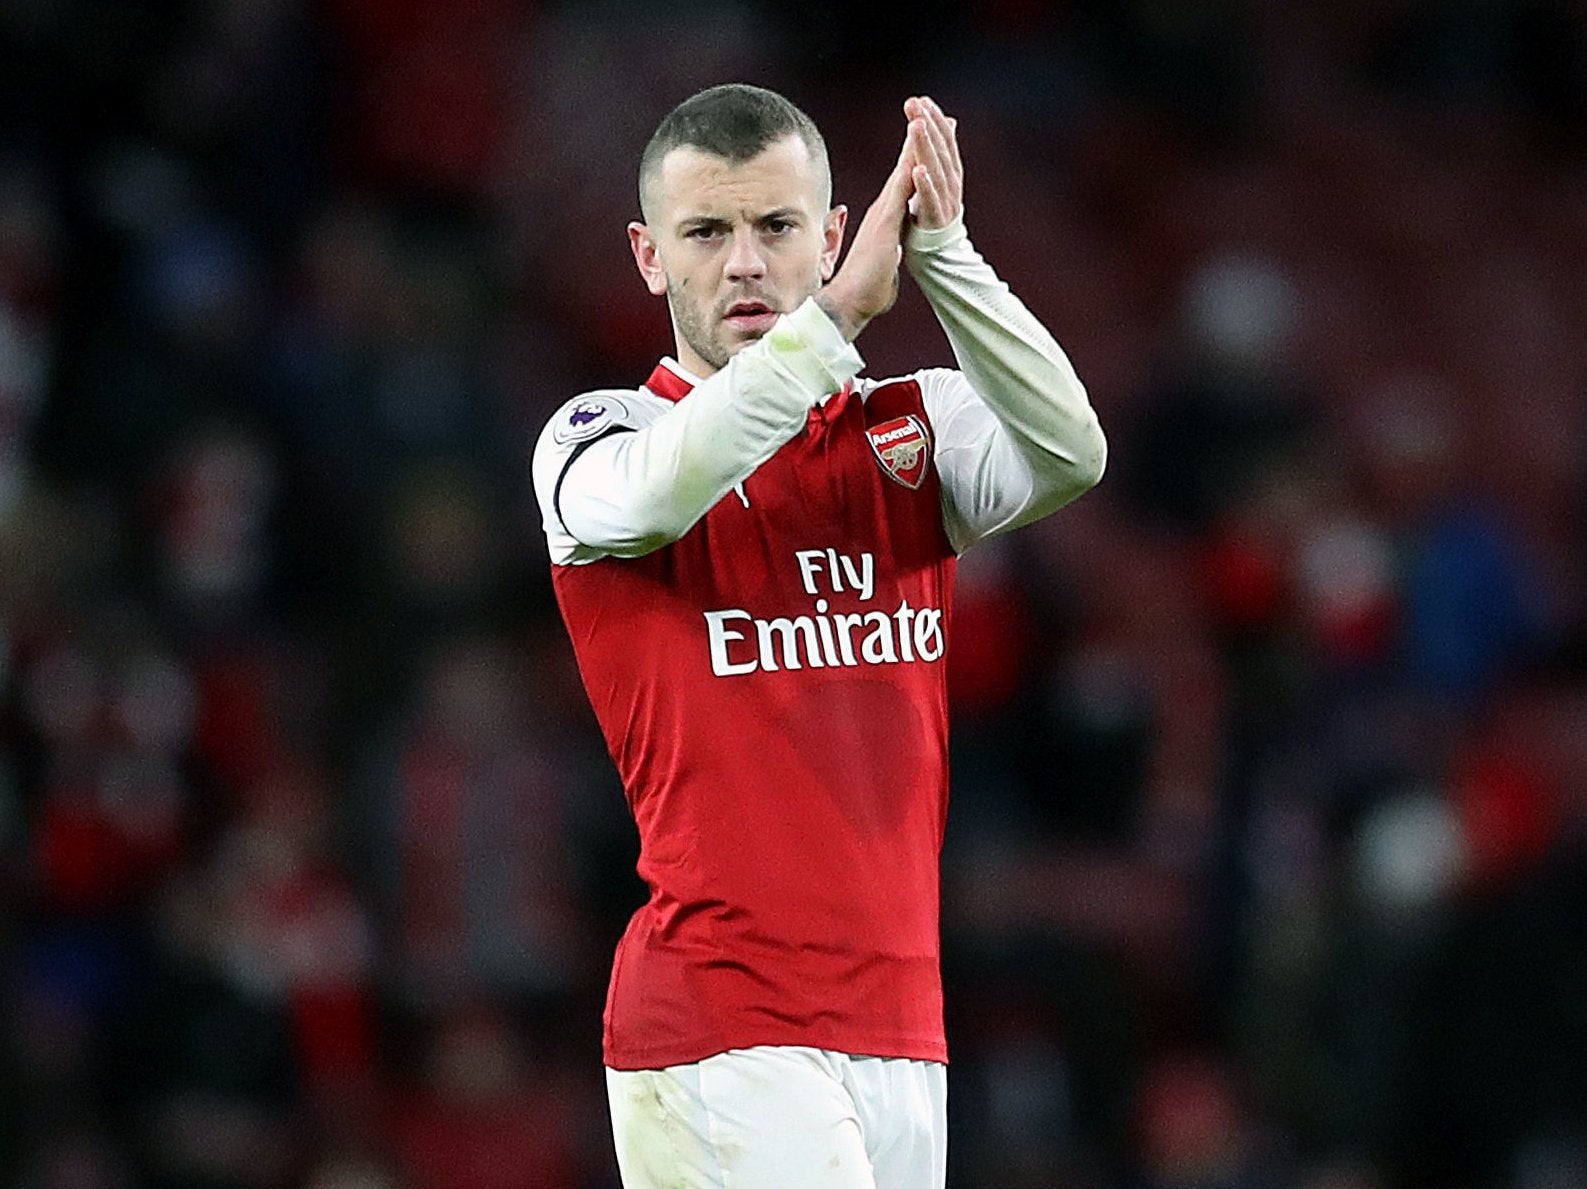 Jack Wilshere has said his goodbyes at Arsenal